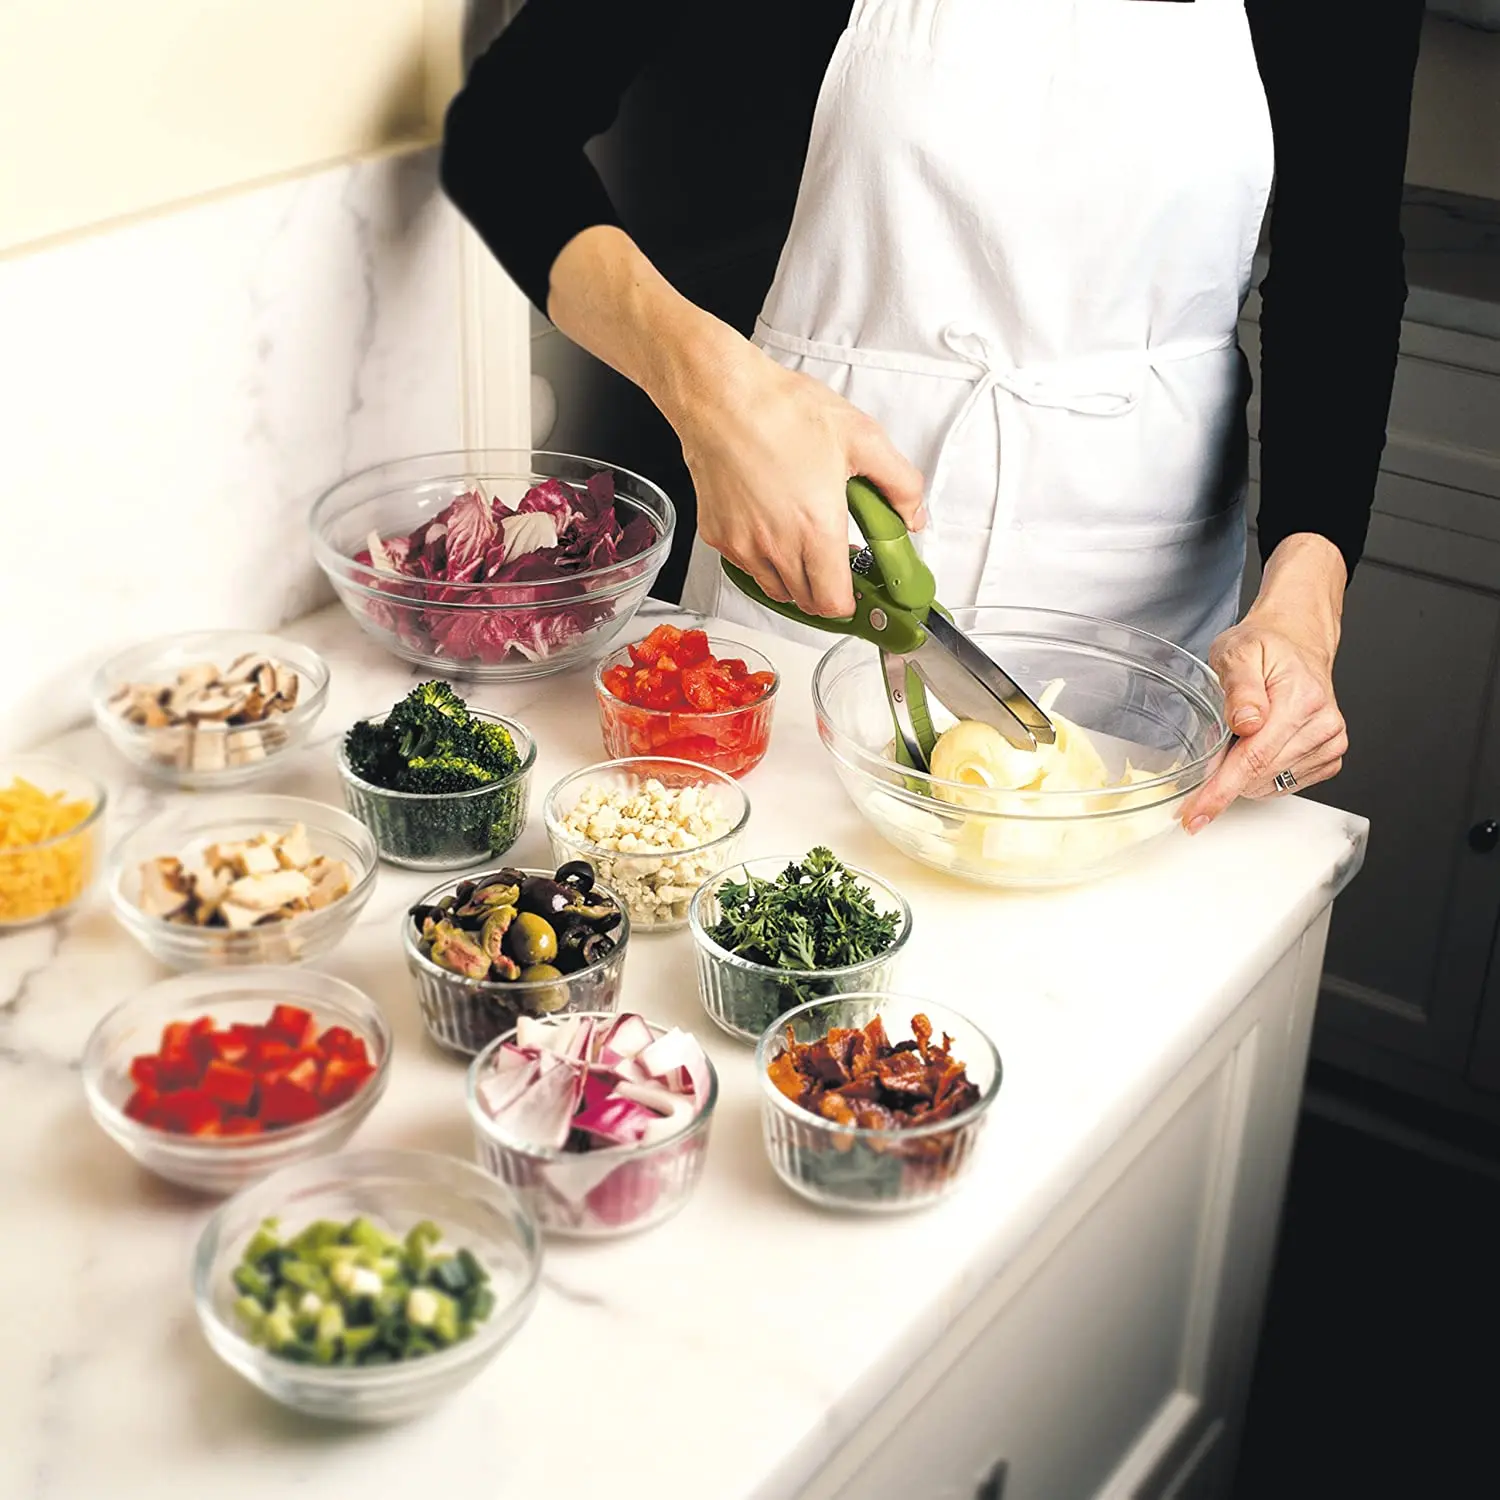 Toss & Chop Titanium Salad Scissors, Vegetable Tool